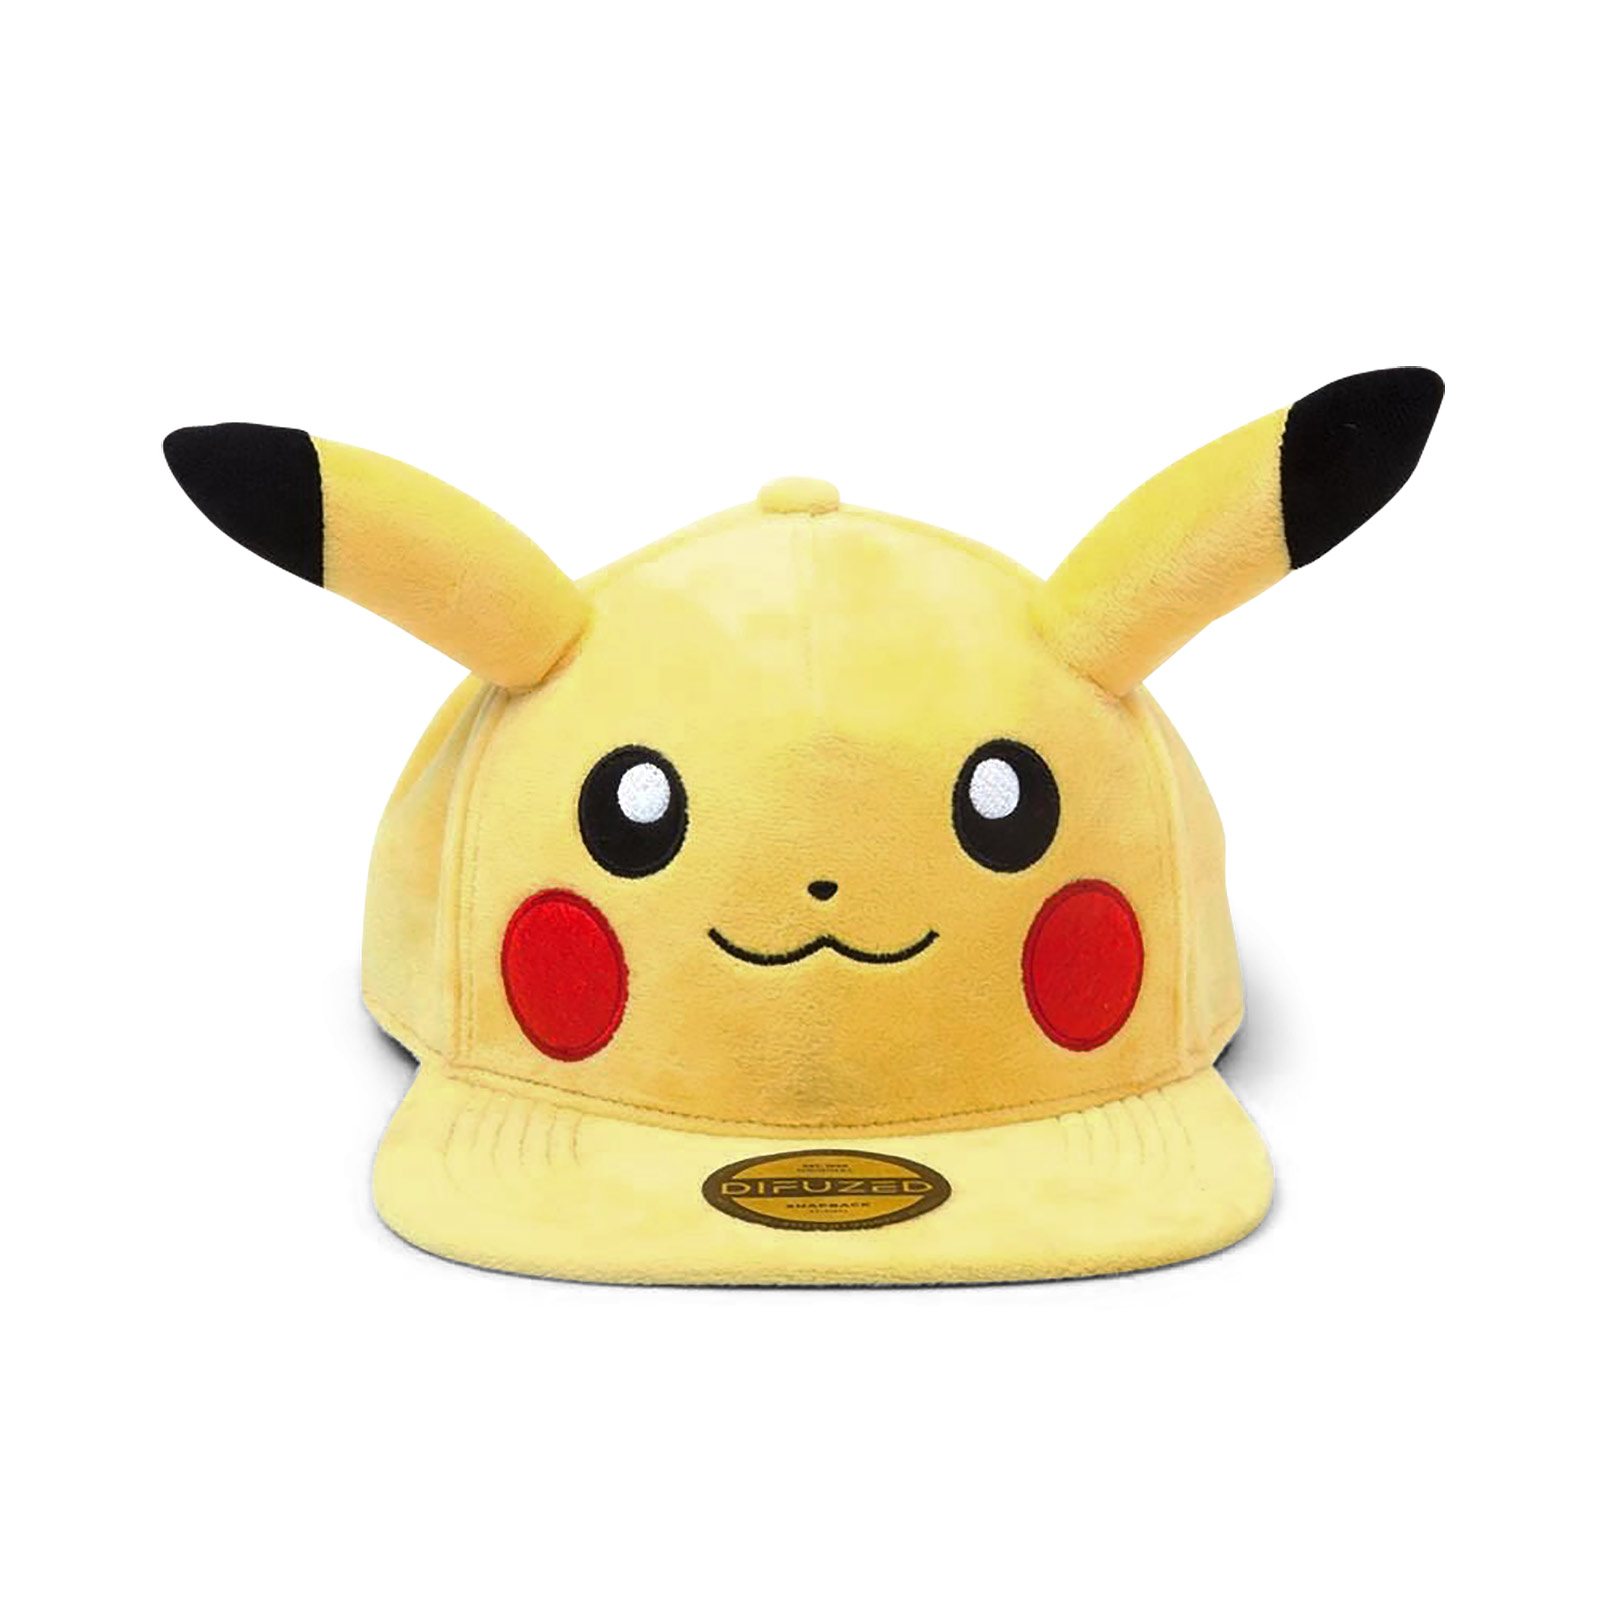 Pokemon - Pikachu Plush Snapback Cap